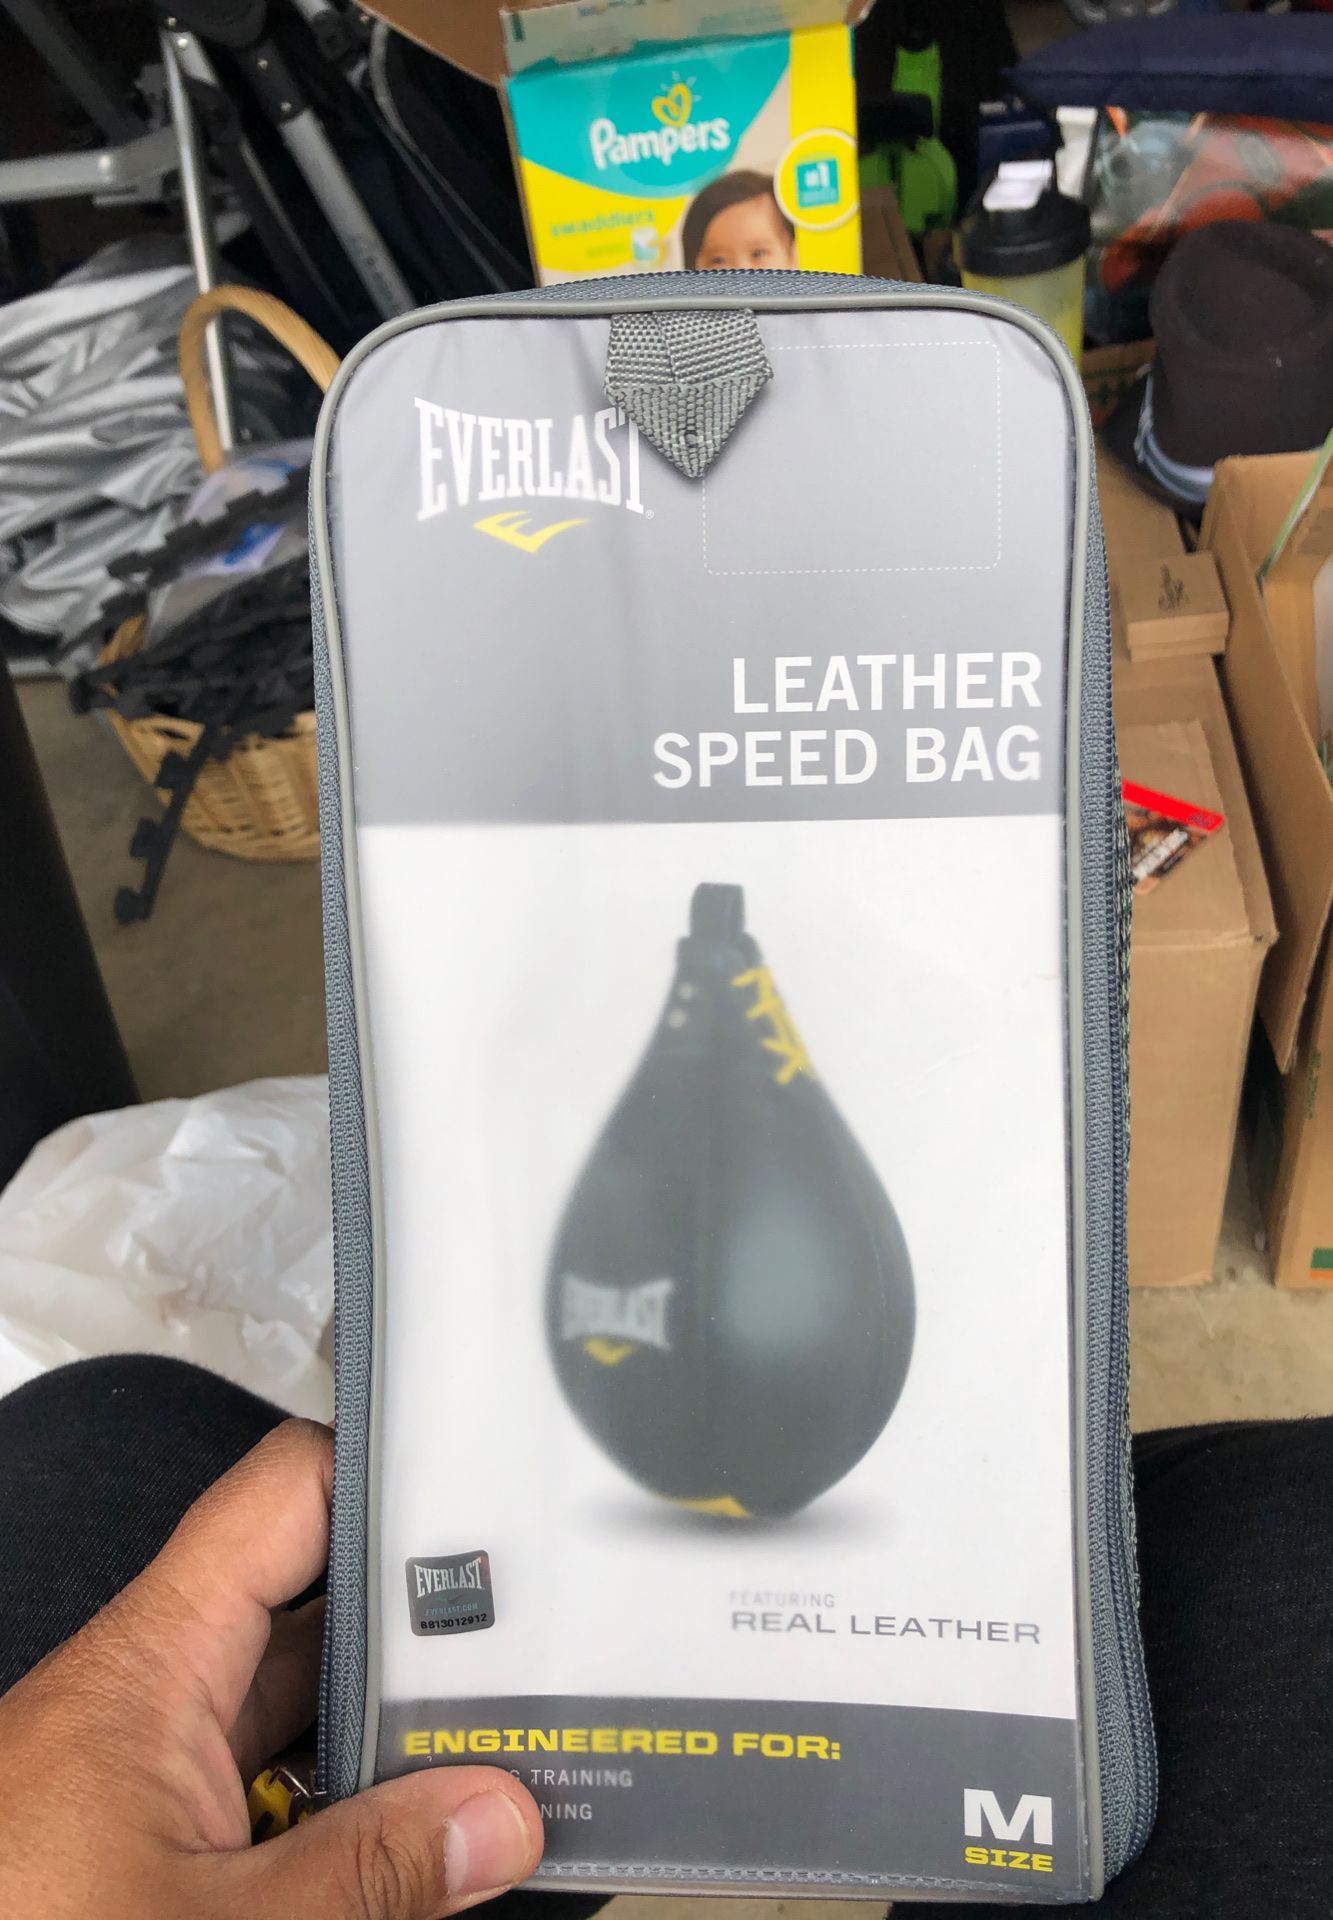 Everlast leather speed bag